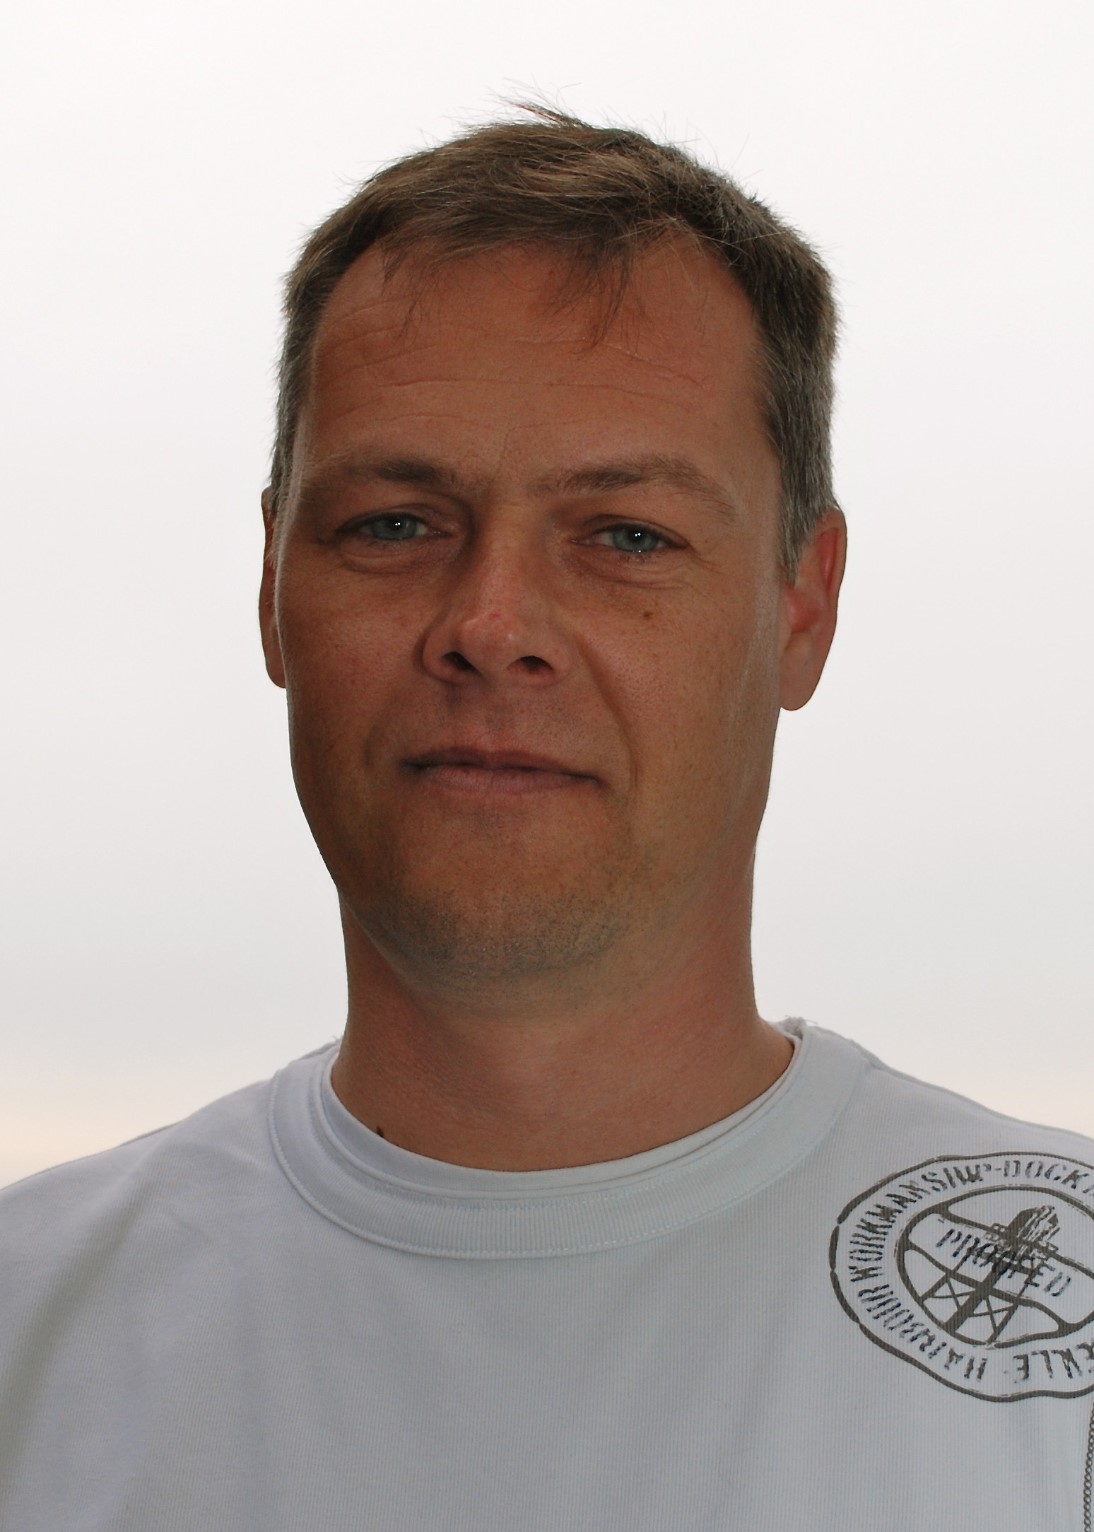 Dr. Erich Brunner